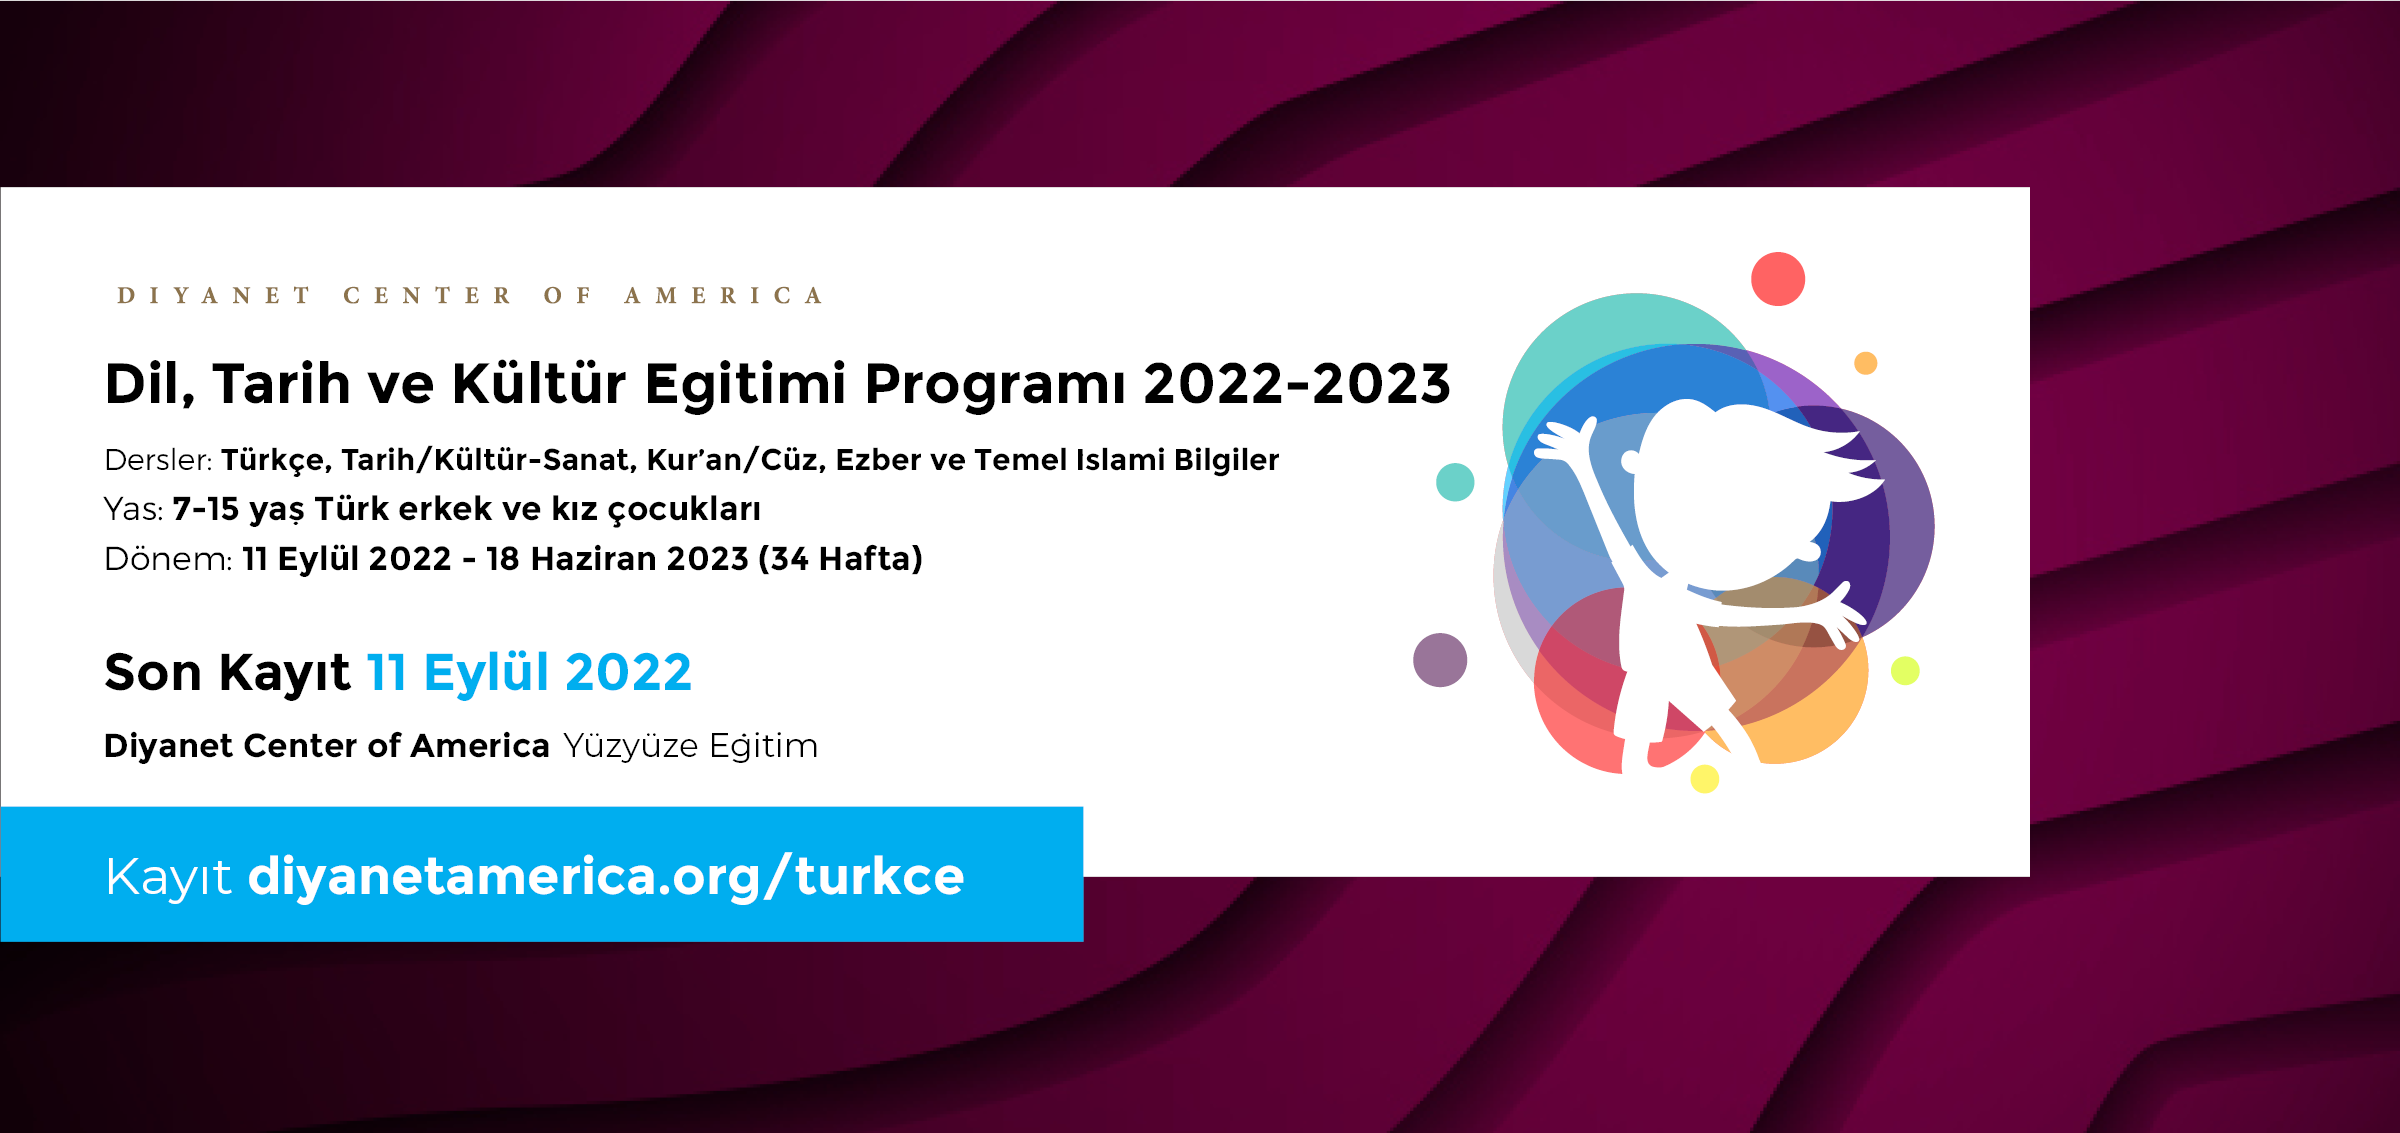 DCA Dil, Tarih ve Kültür Eğitimi Programı 2022-2023